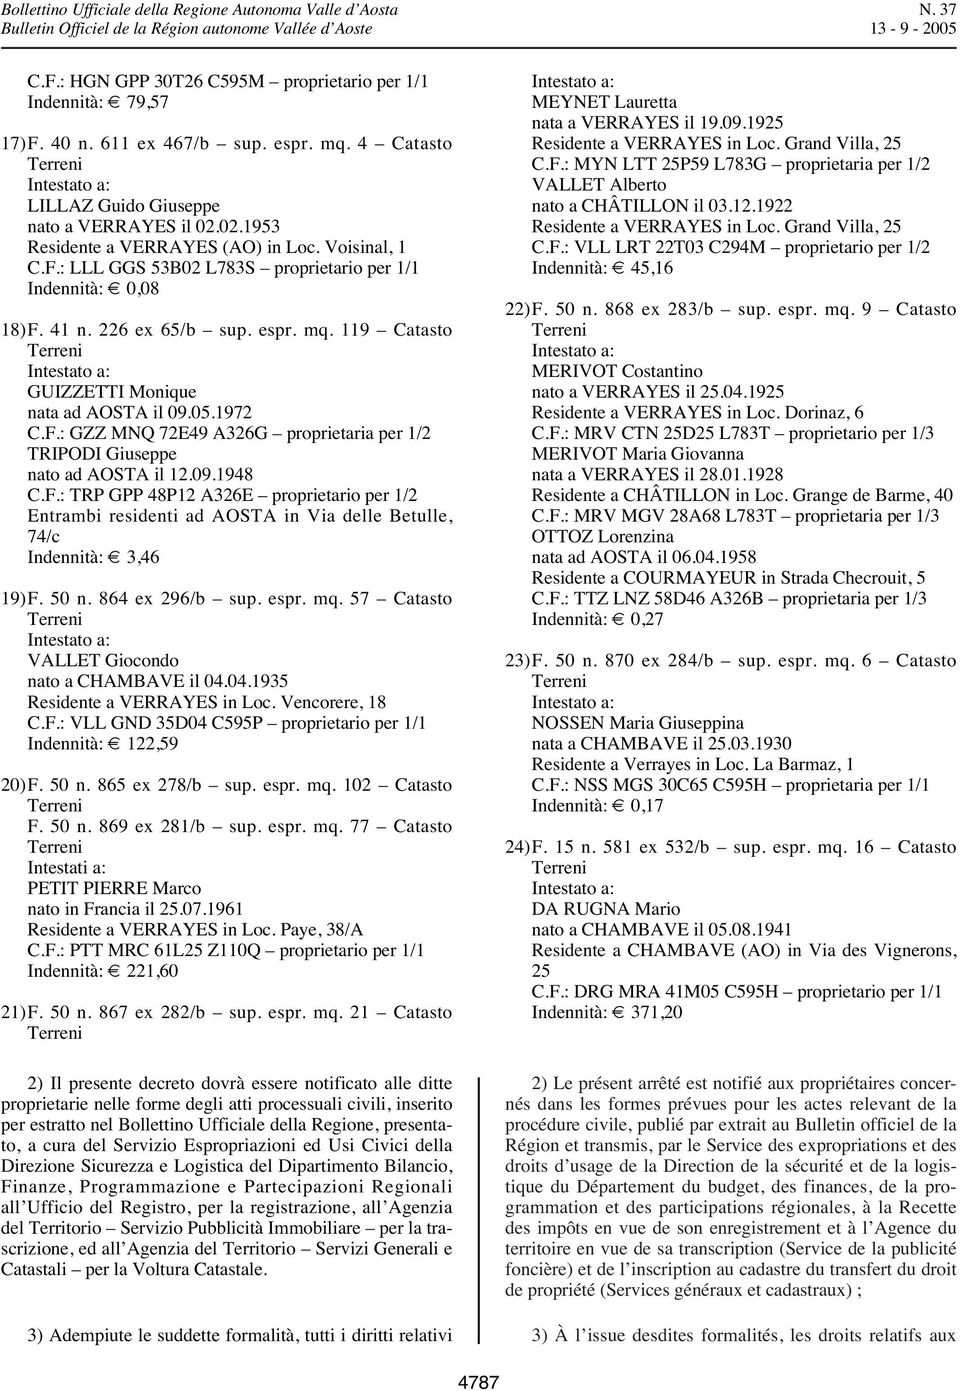 09.1948 C.F.: TRP GPP 48P12 A326E proprietario per 1/2 Entrambi residenti ad AOSTA in Via delle Betulle, 74/c Indennità: 3,46 19)F. 50 n. 864 ex 296/b sup. espr. mq.